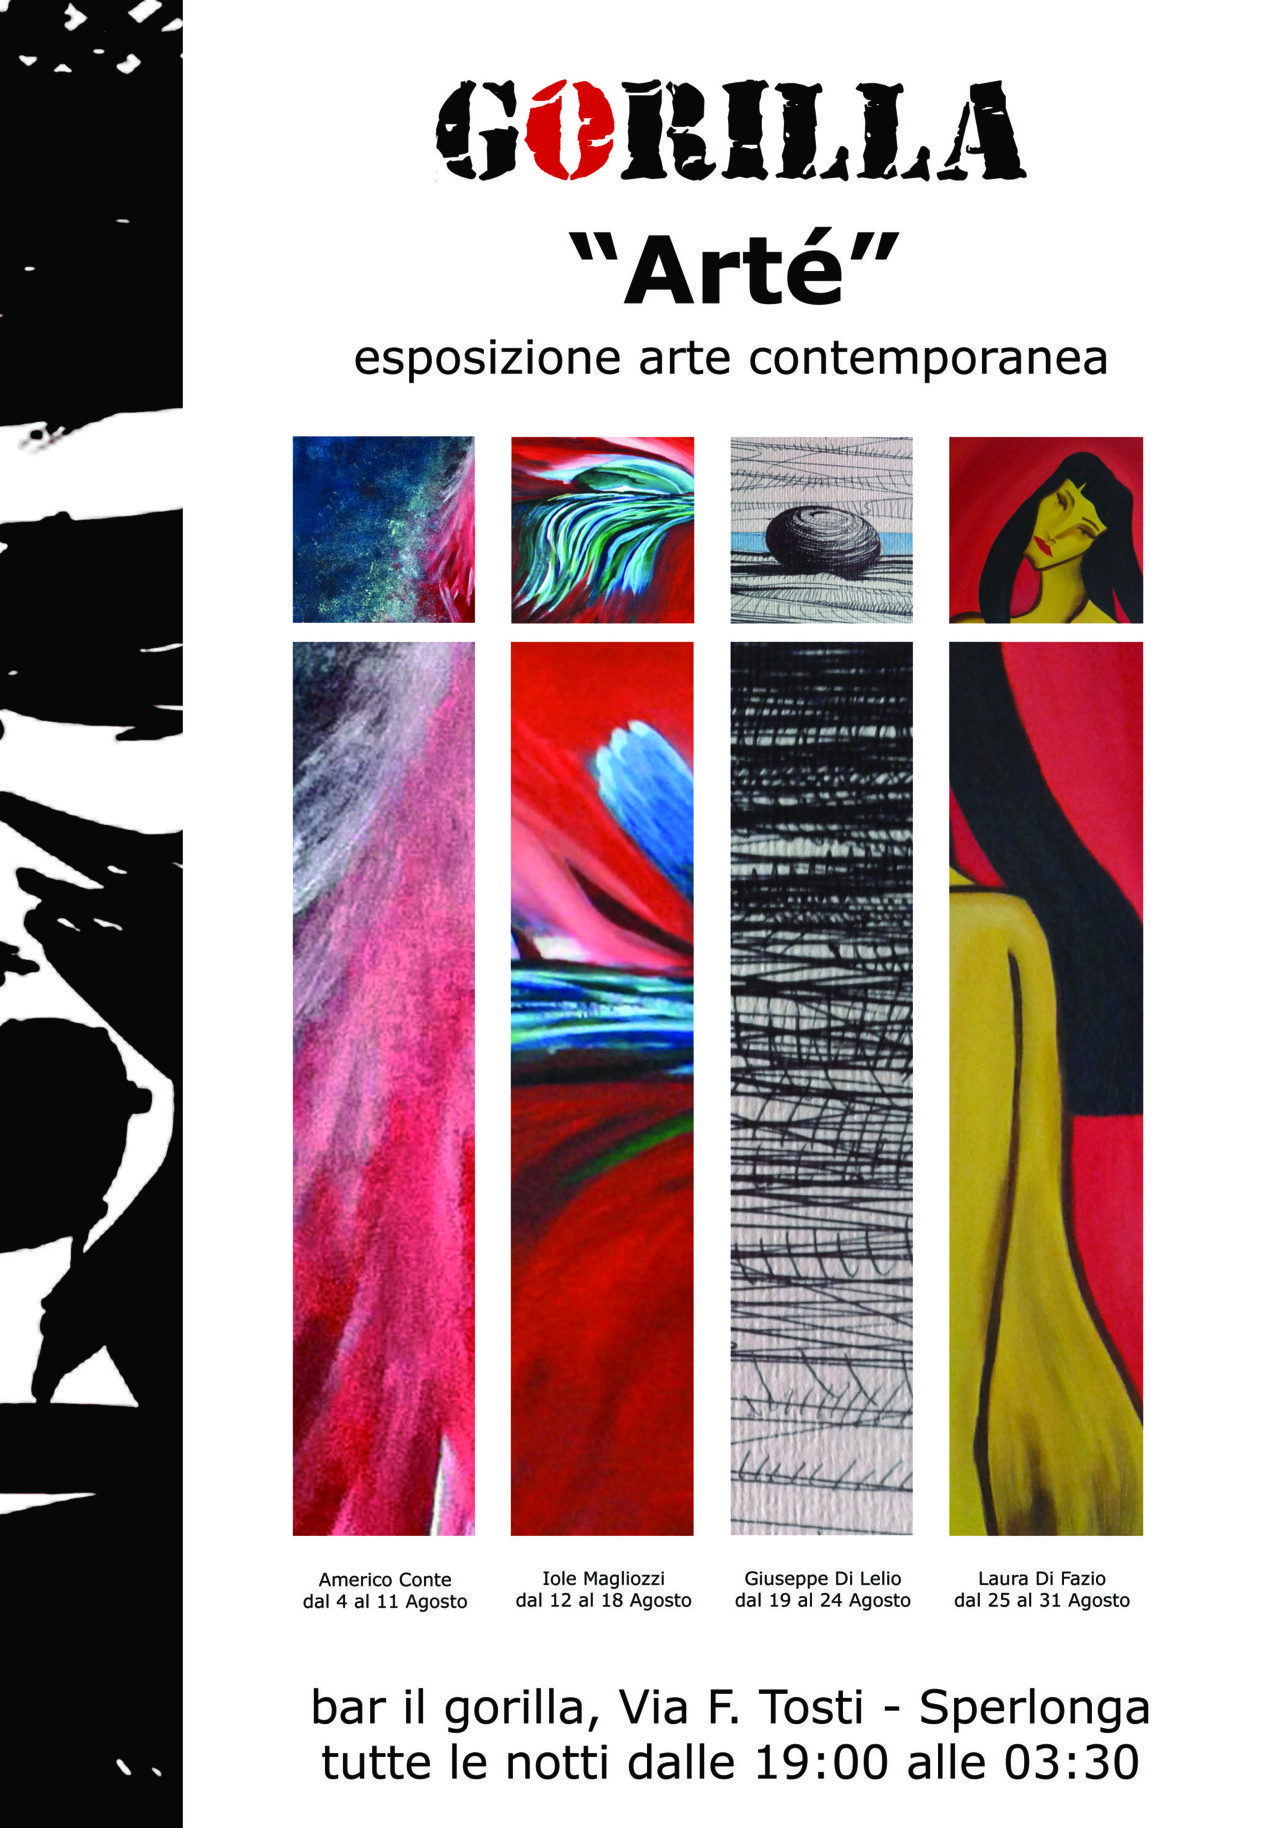 Sperlonga, inaugurata rassegna d’arte contemporanea “Arté” negli spazi del Gorilla